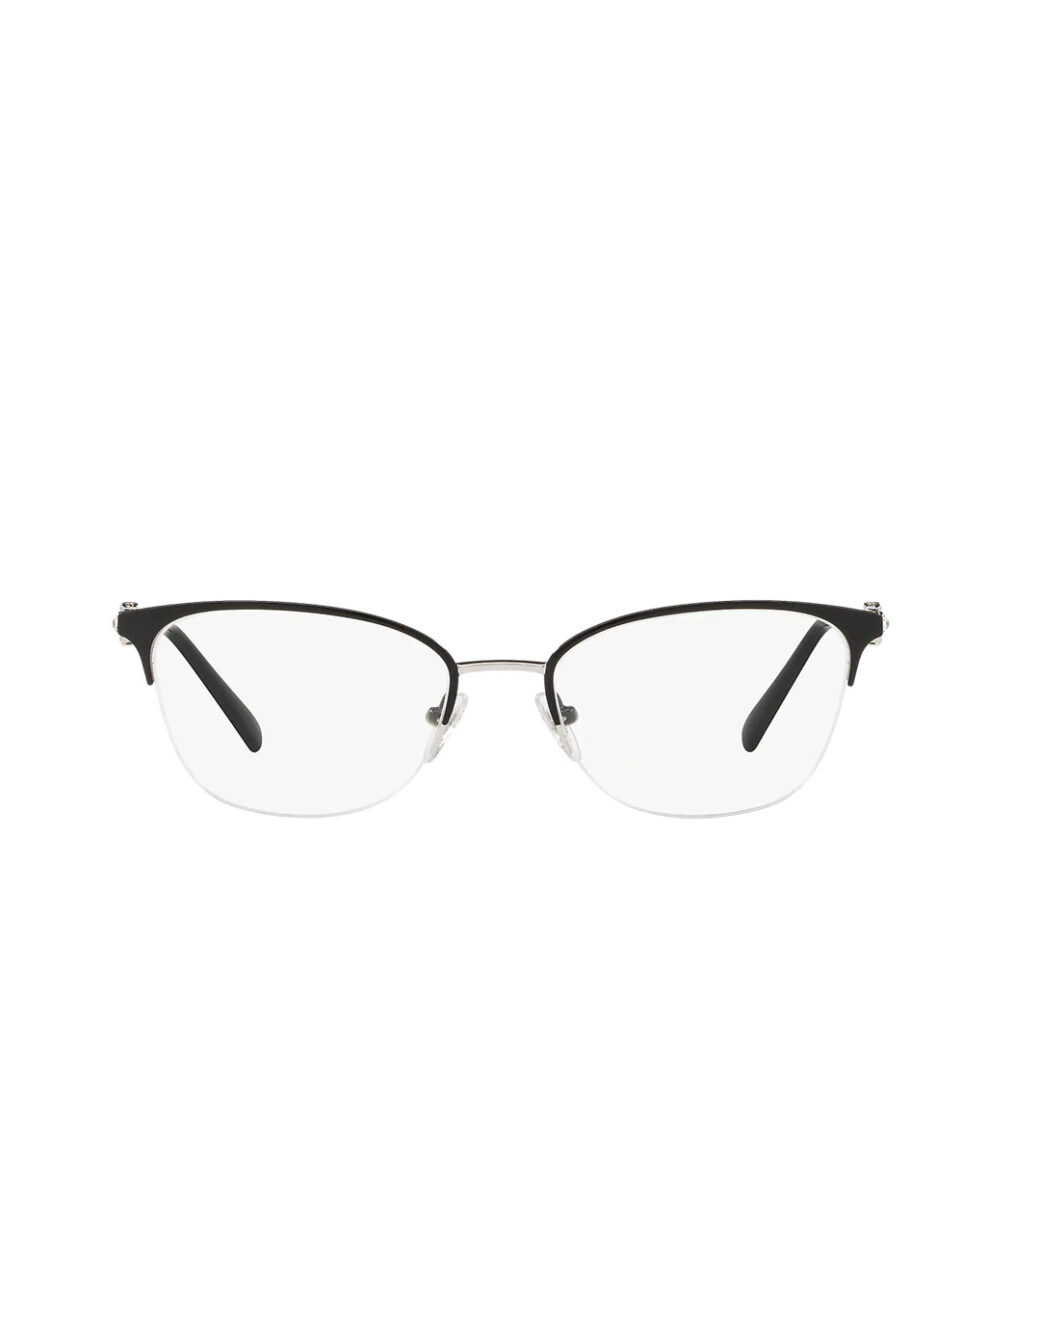 Vogue Eyewear - Shop Women Eyeglasses from UAE Optics - uaeoptics.com